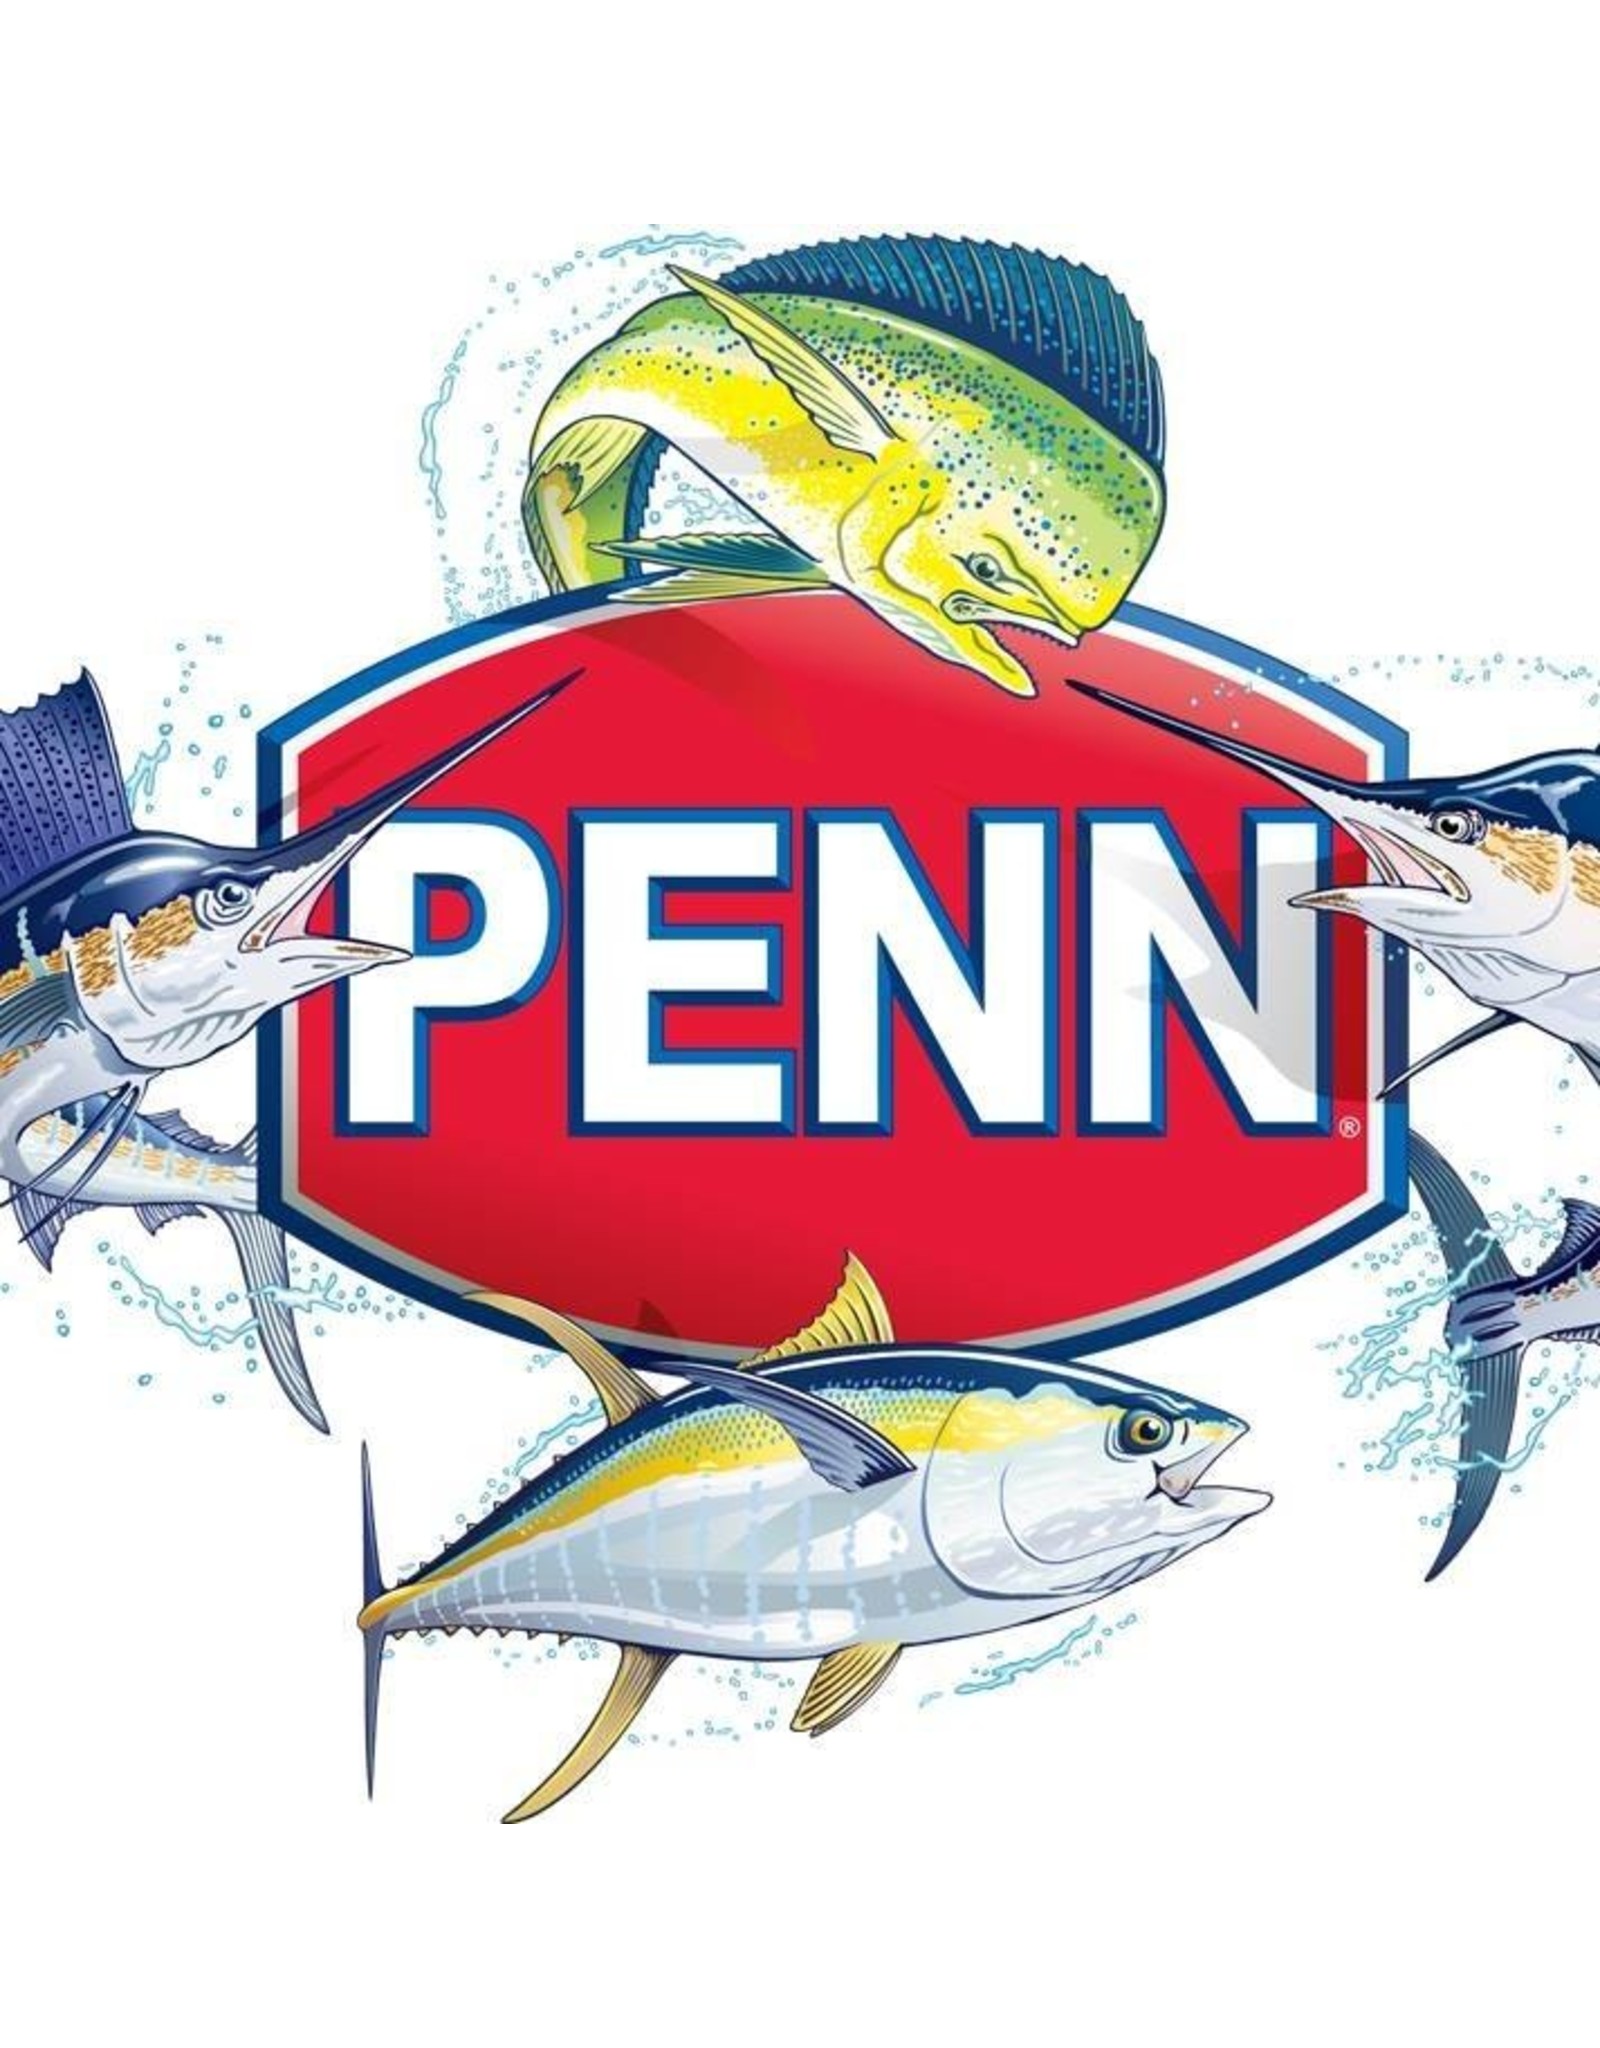 Penn 49-710  CLICK SPRING